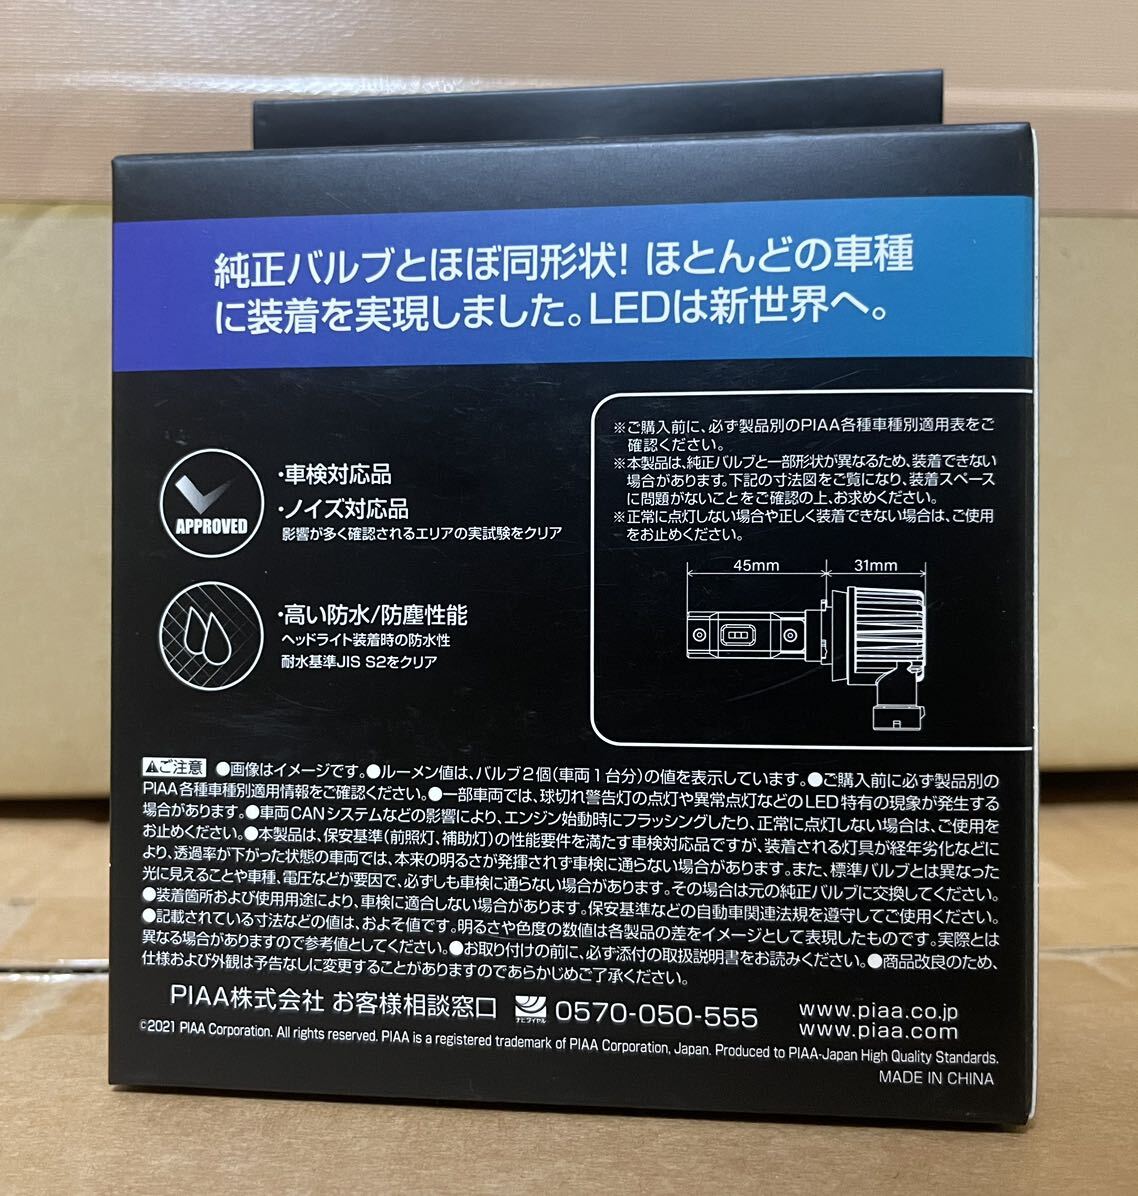 1000 иен старт PIAA head & противотуманые фары для LED клапан(лампа) H8/11 6600K [LEH172]